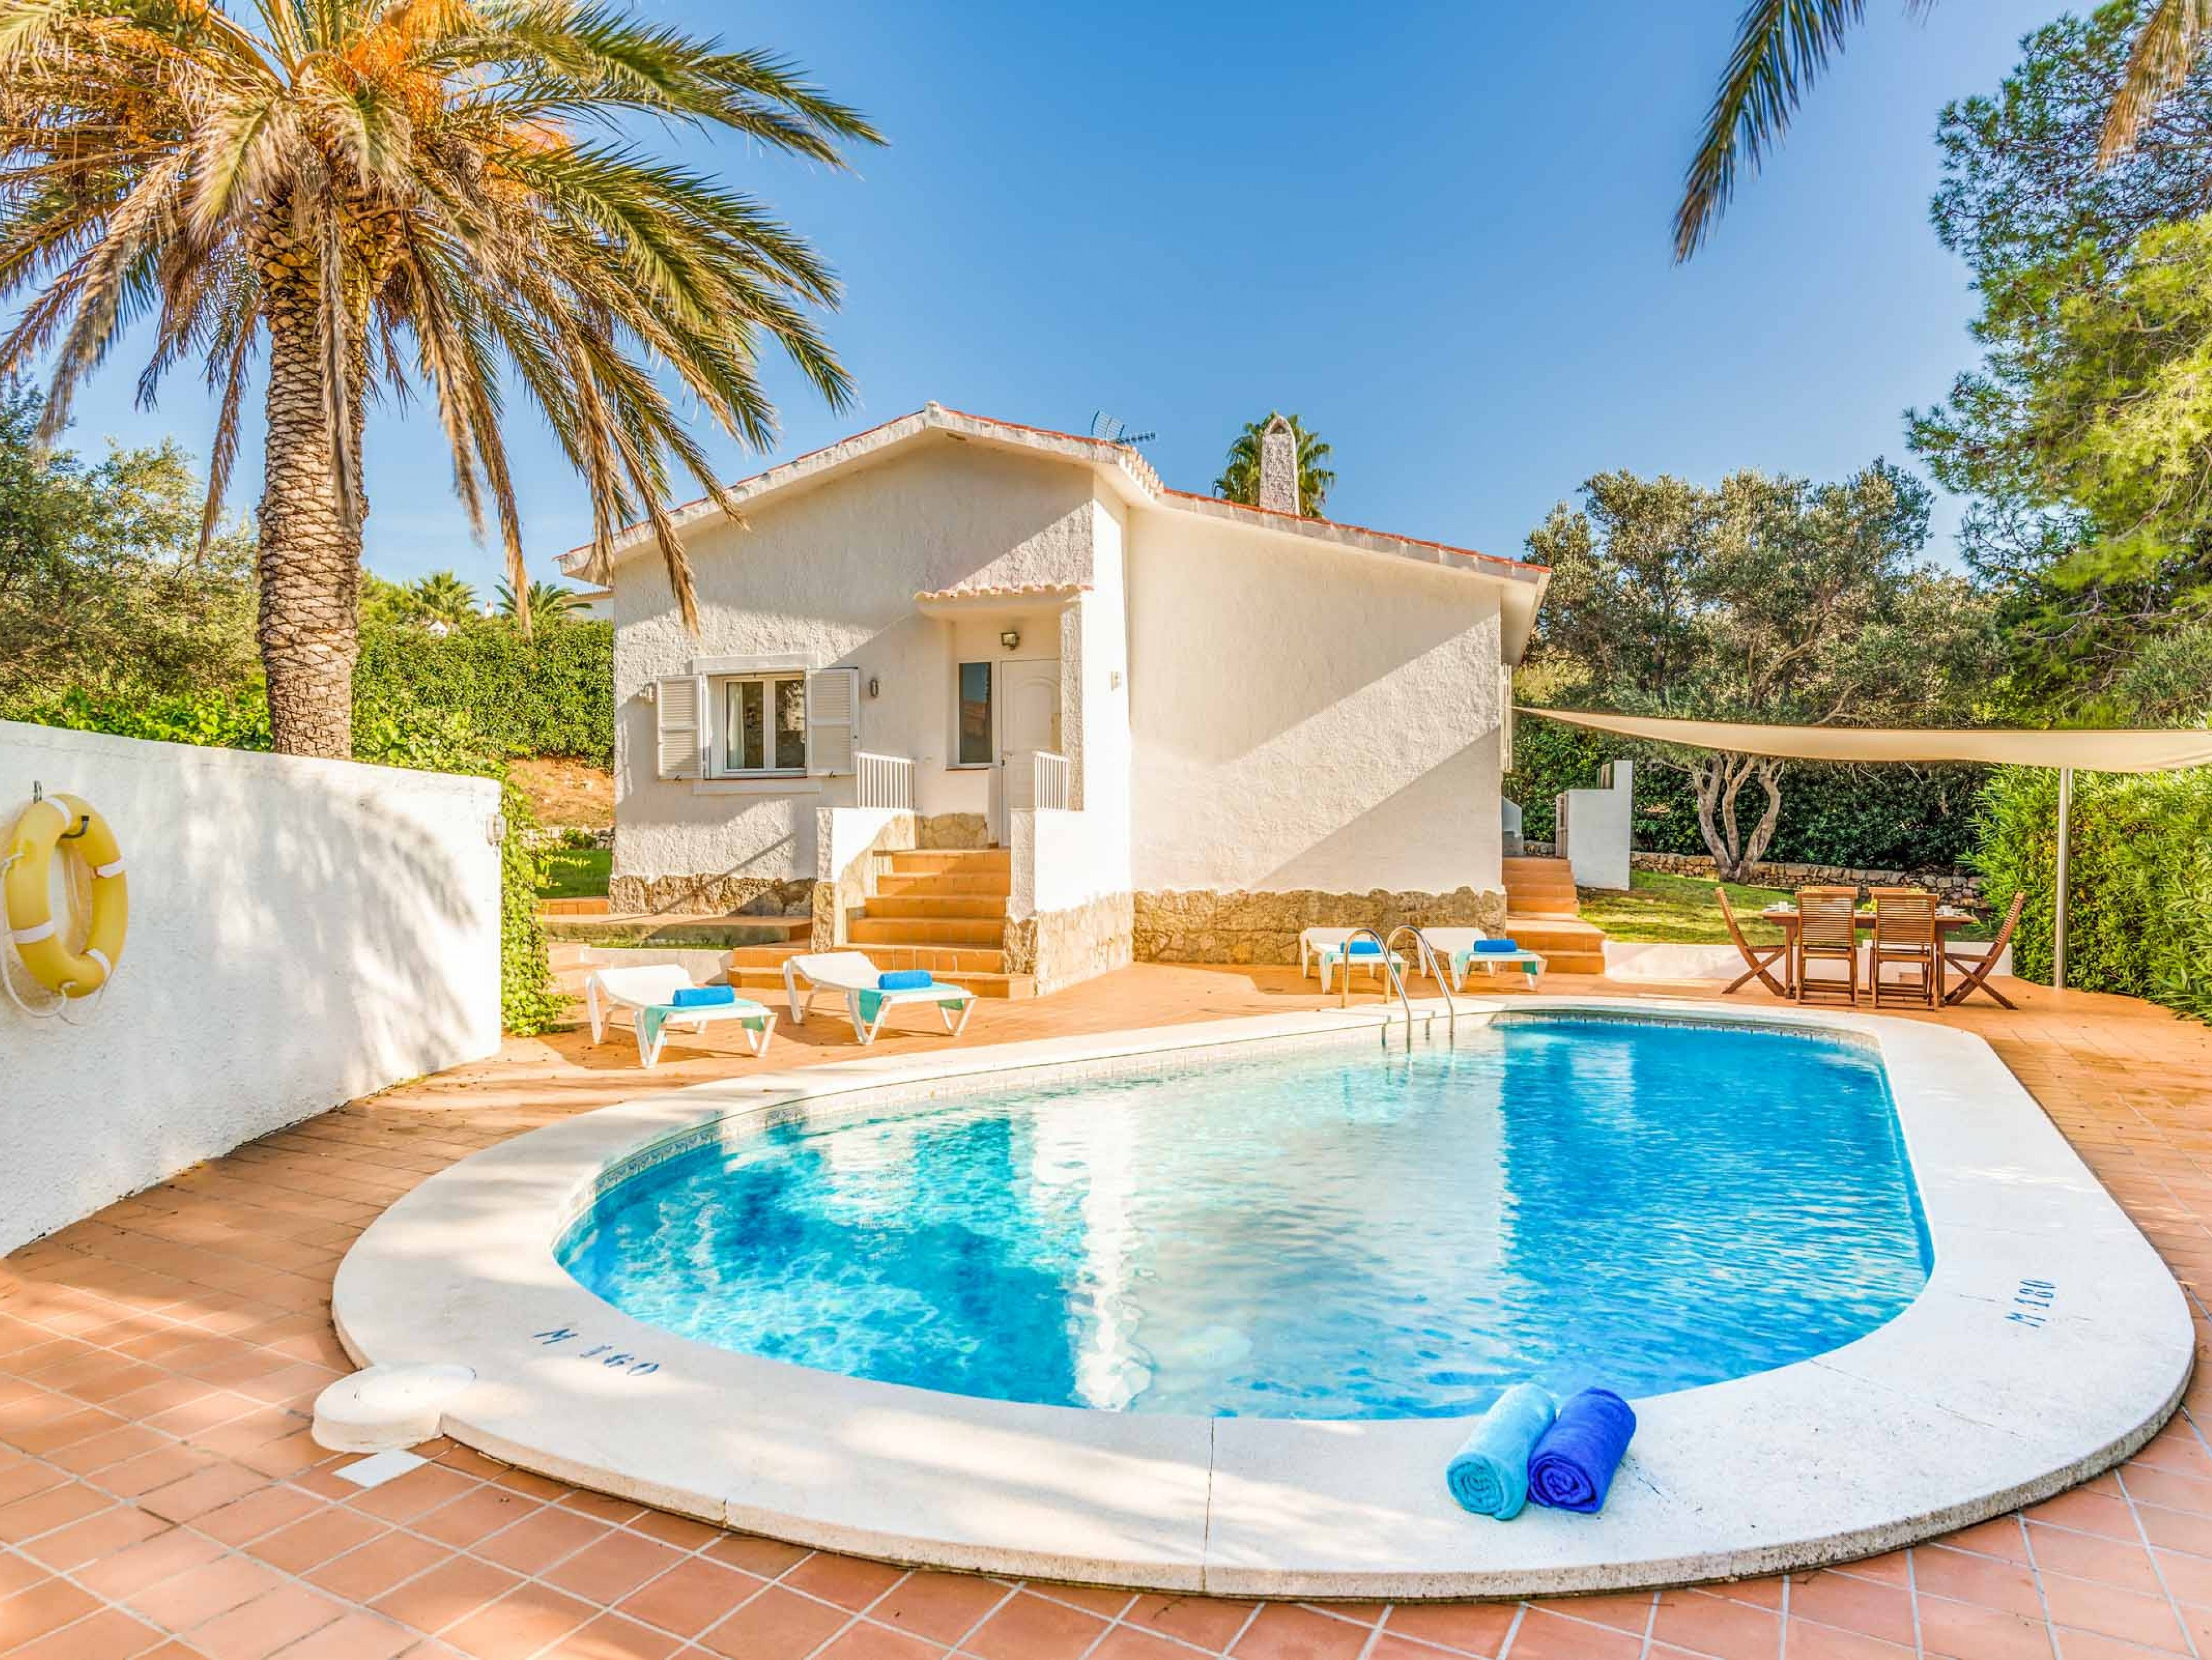 Villa Marismas Sombra Spain villas with pools